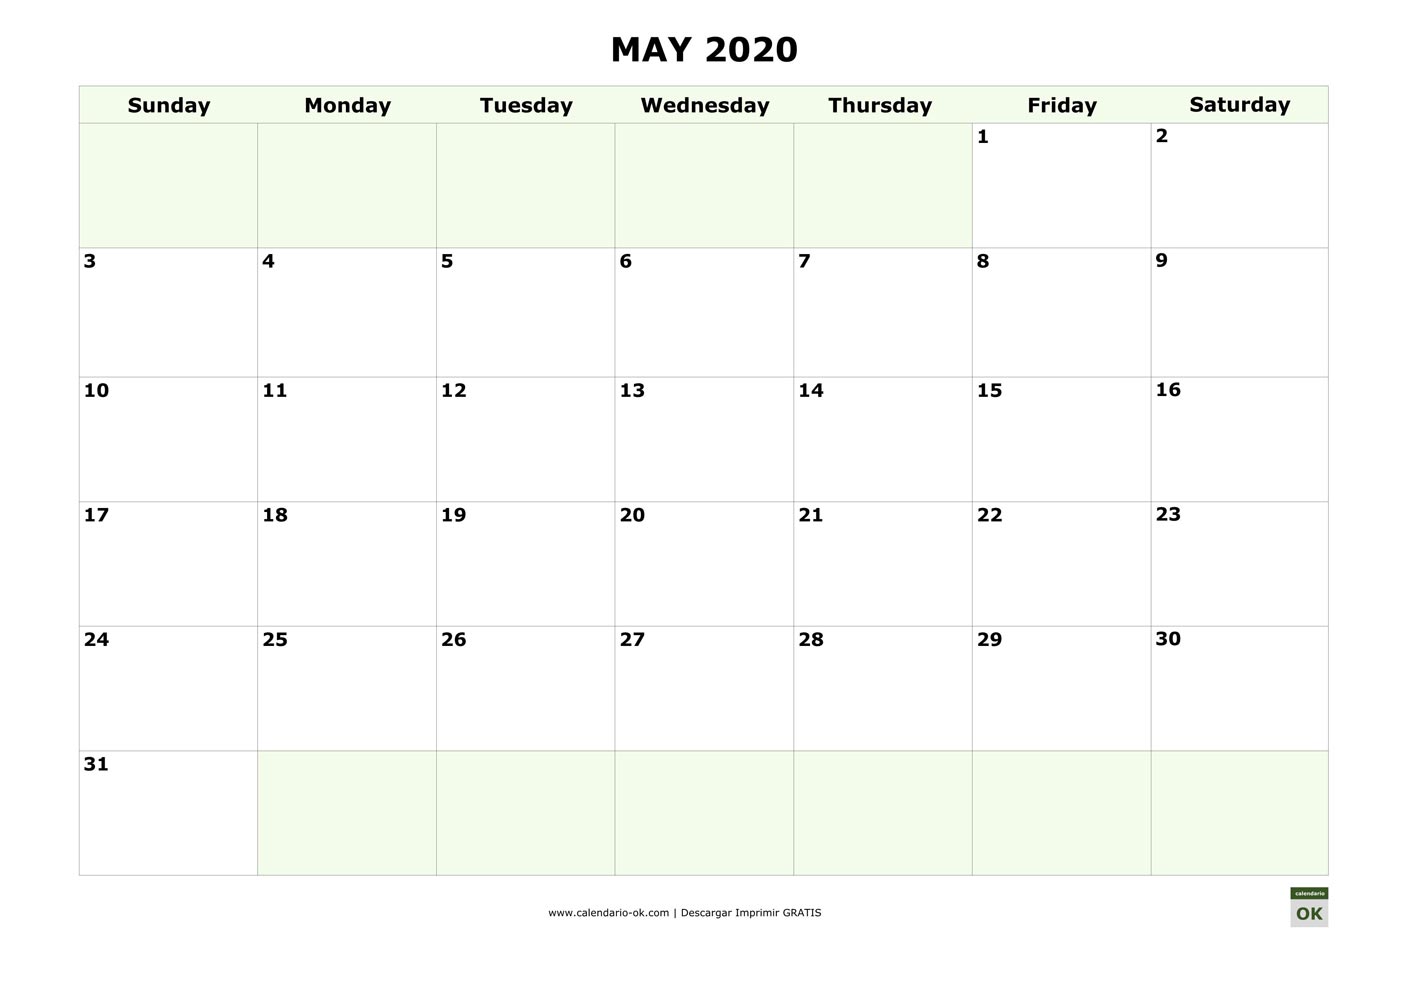 MAYO 2020 calendario en INGLES empieza por DOMINGO